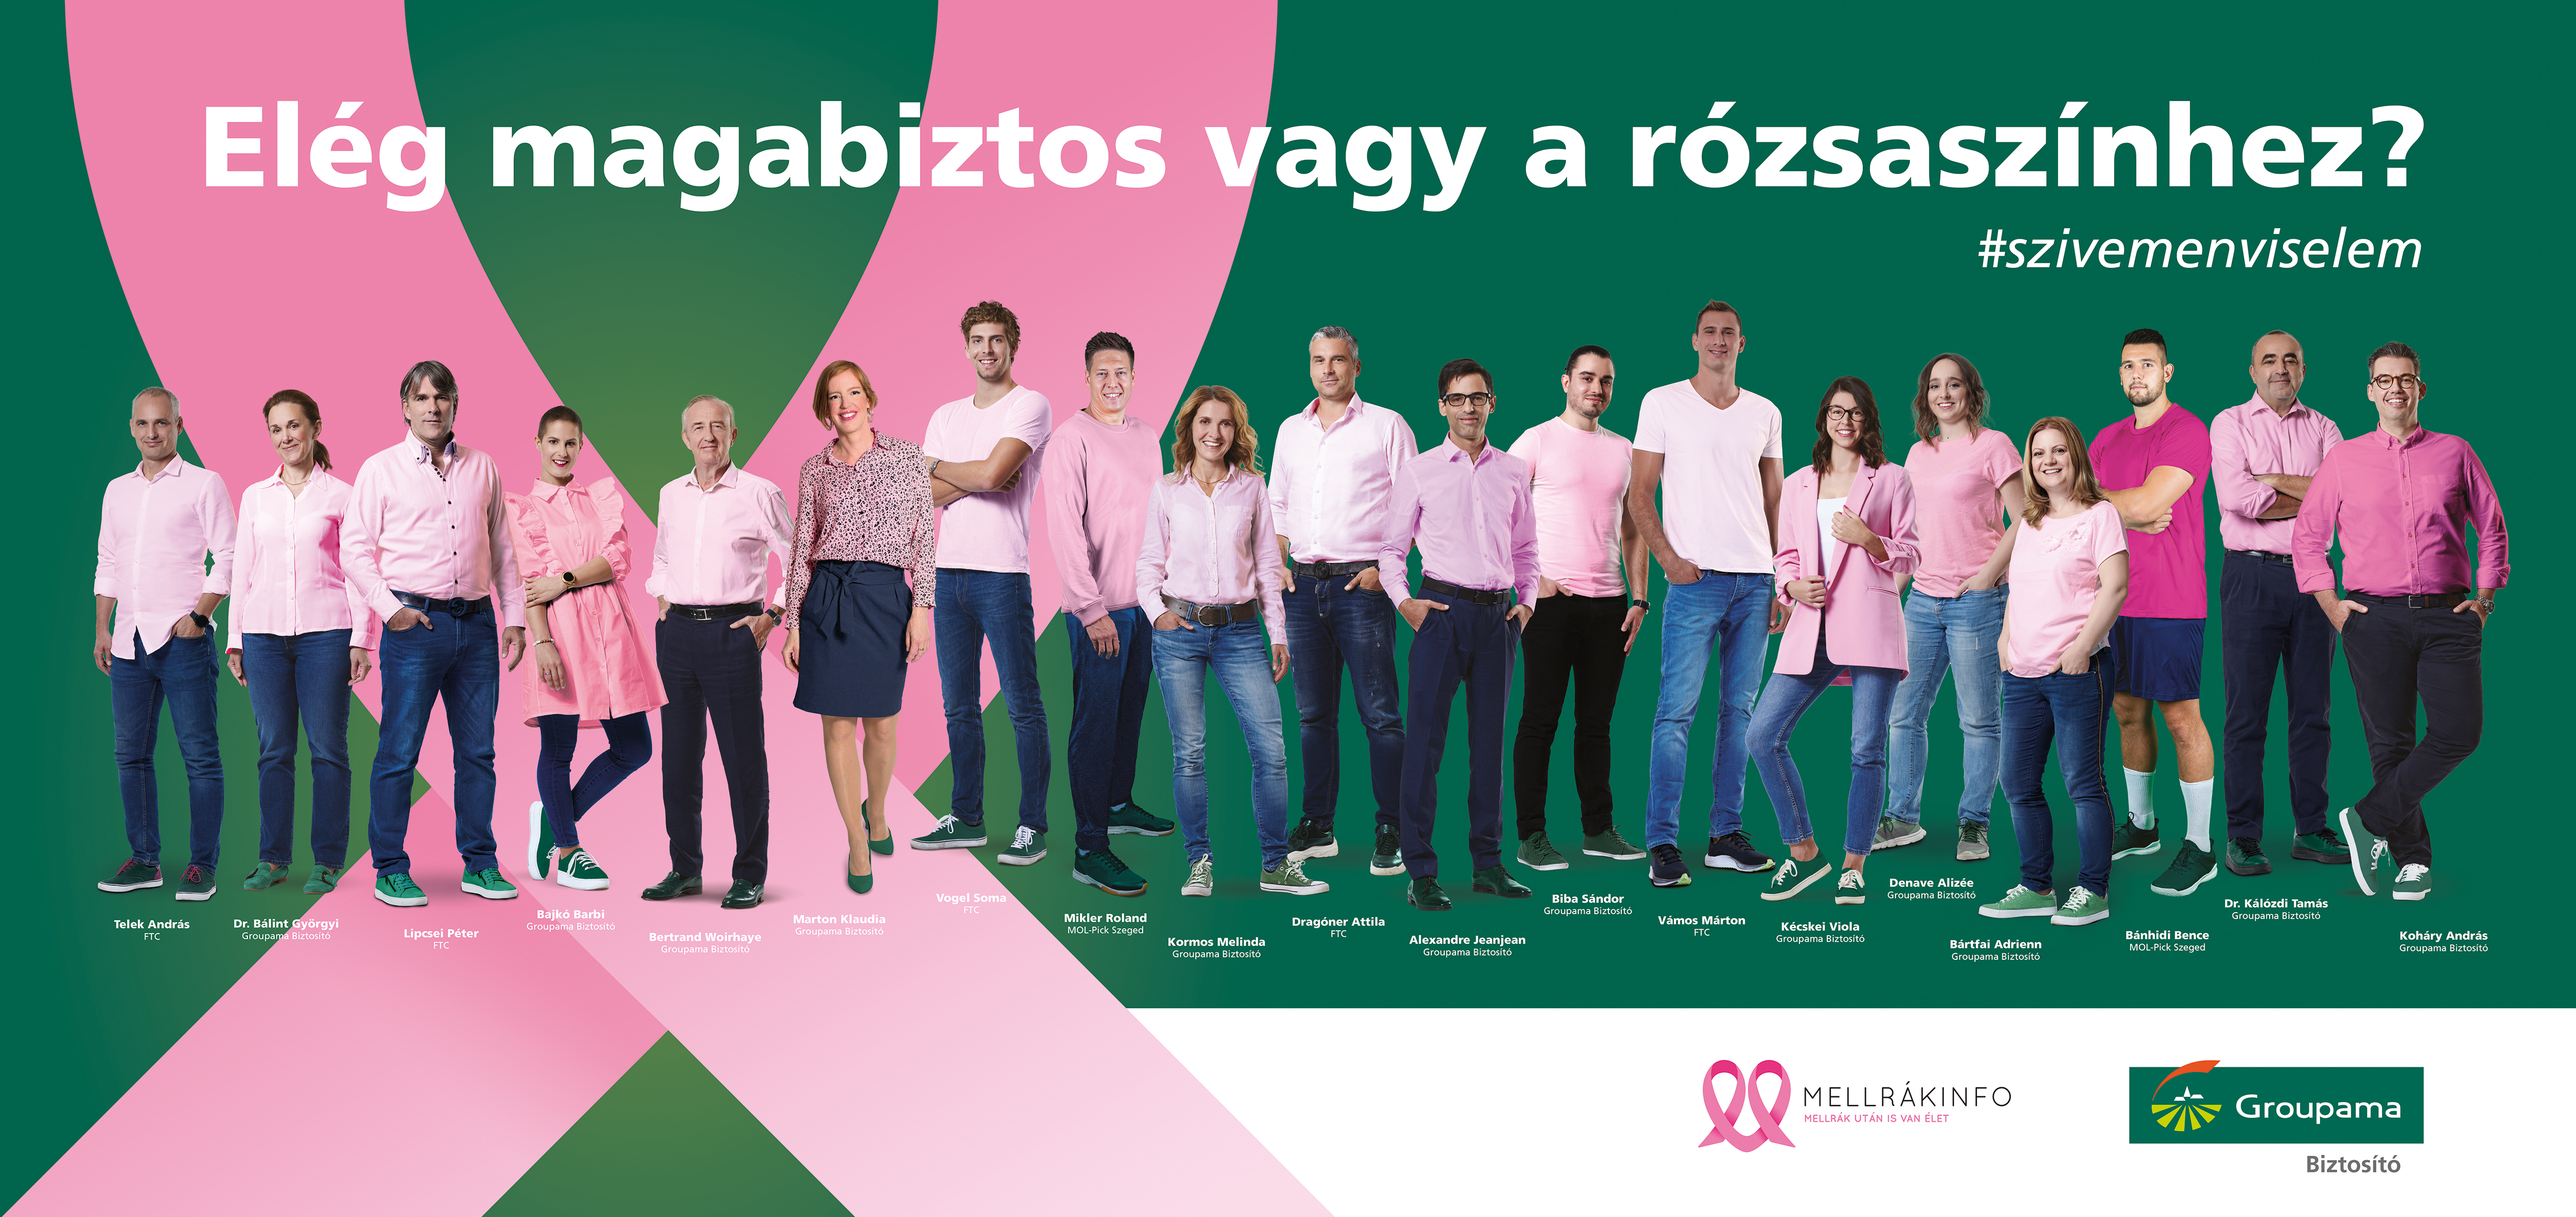 A Groupama Biztosító országos óriásplakát kampánya